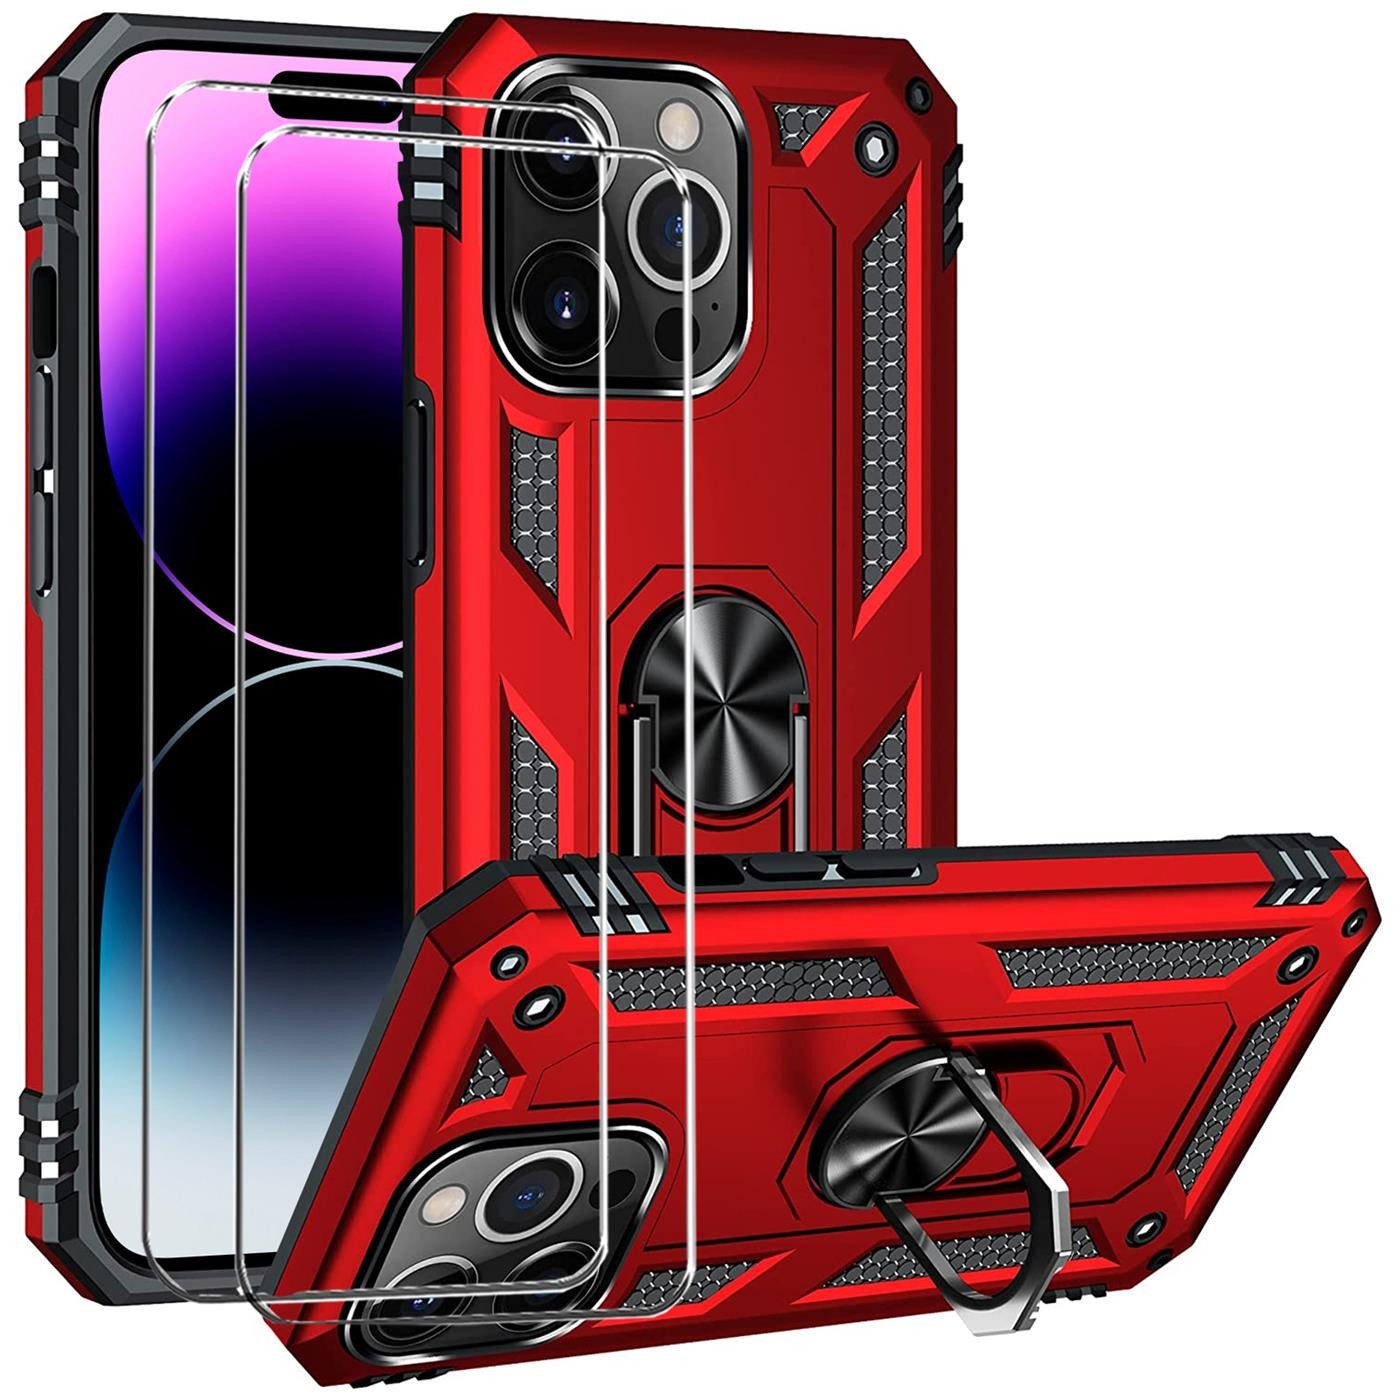 CoolGadget Handyhülle Rot als 2in1 Schutz Cover Set für das Apple iPhone SE 2 4,7 Zoll, 2x Glas Display Schutz Folie + 1x TPU Case Hülle für iPhone SE 2